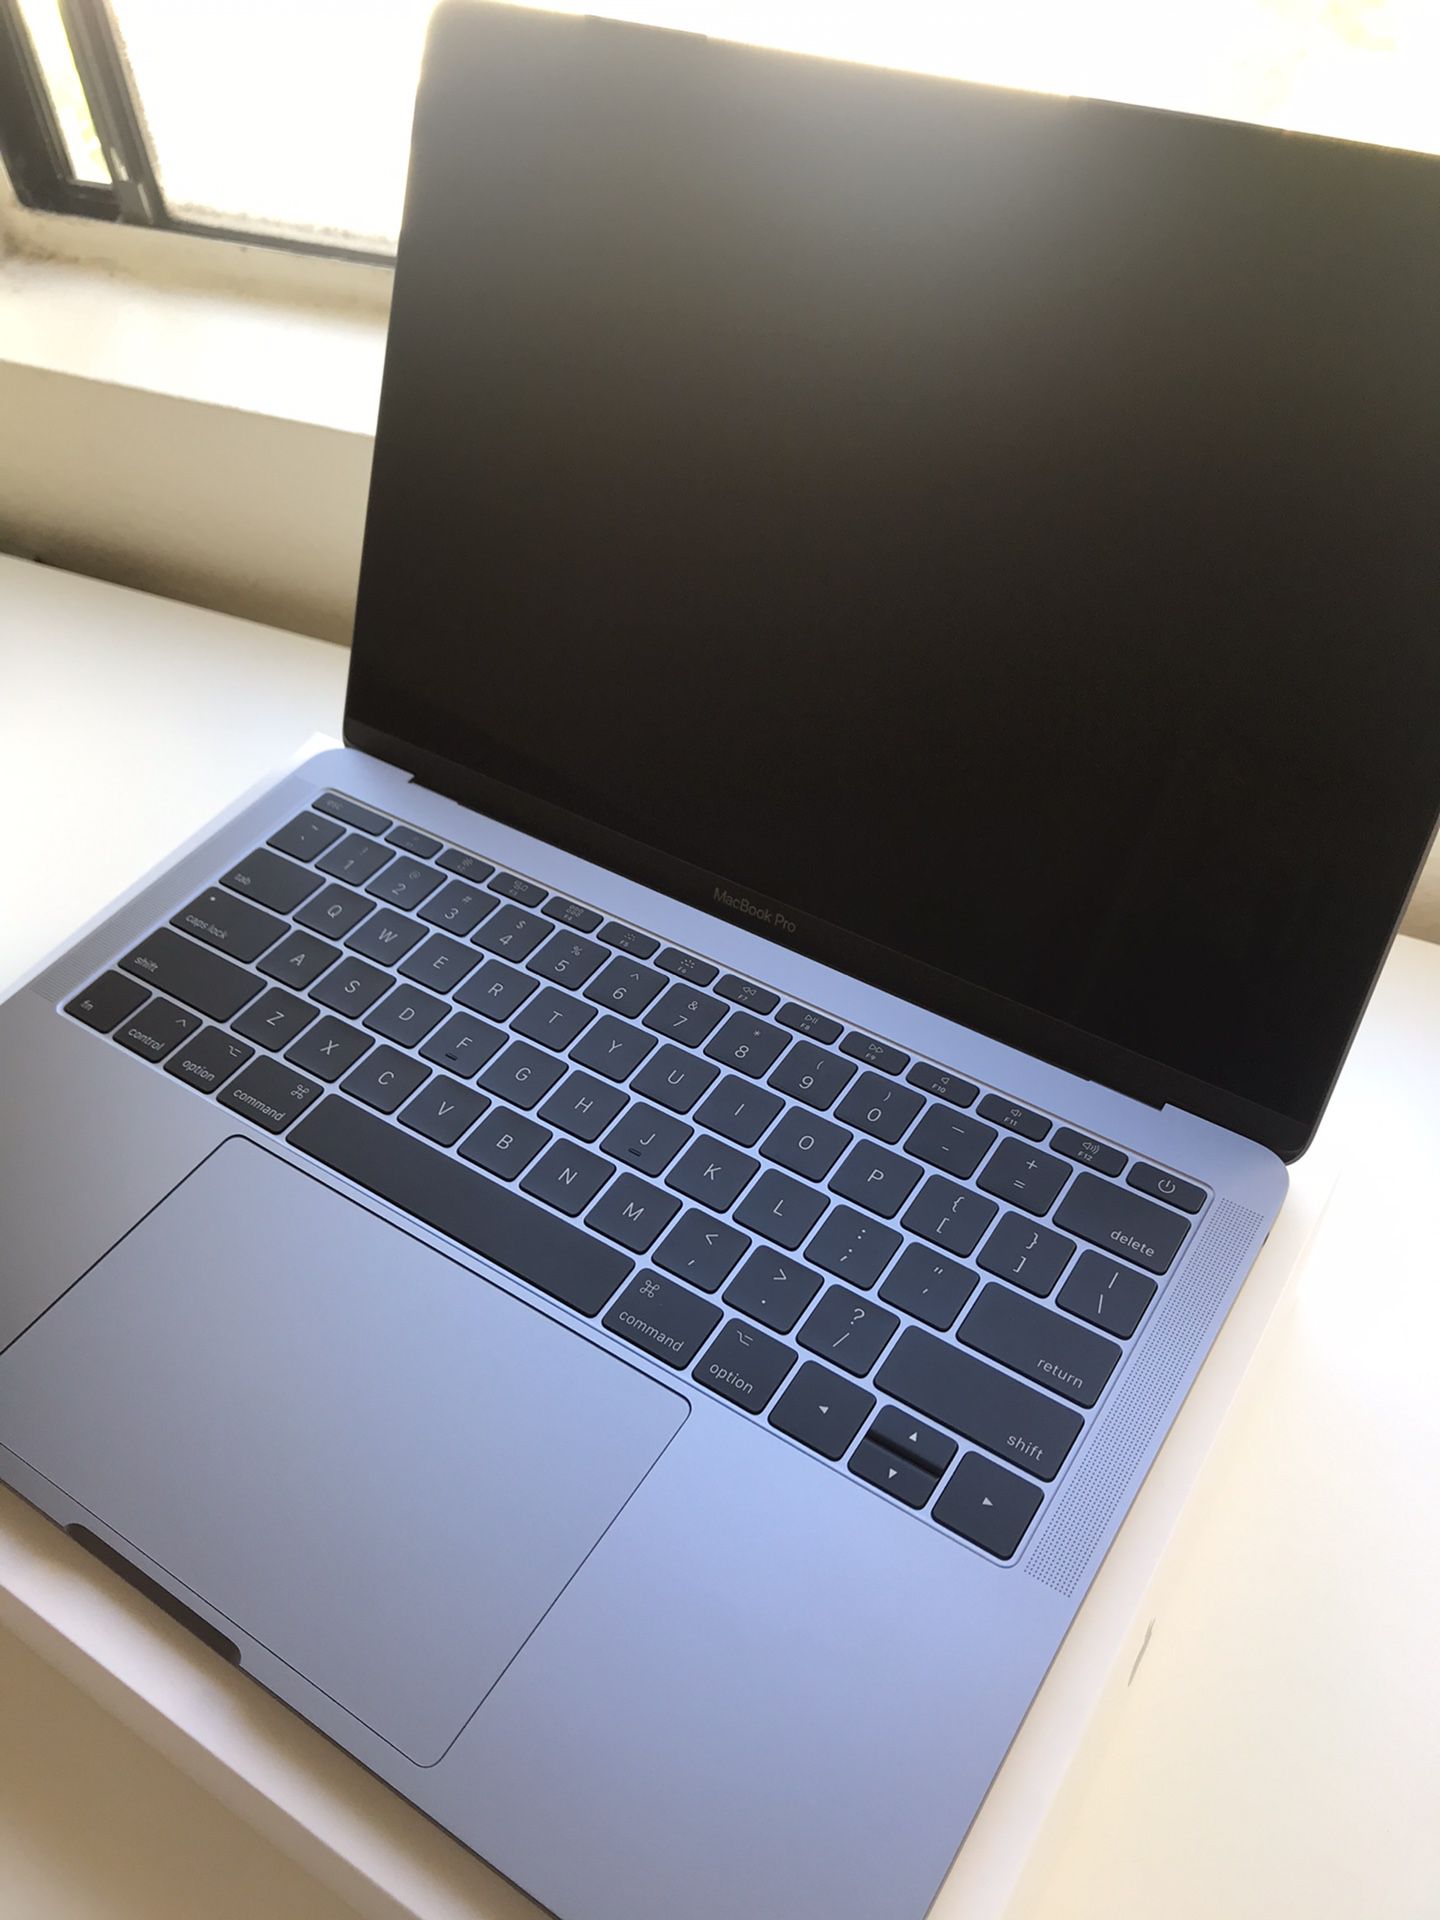 MacBook Pro 13.3 June 2017